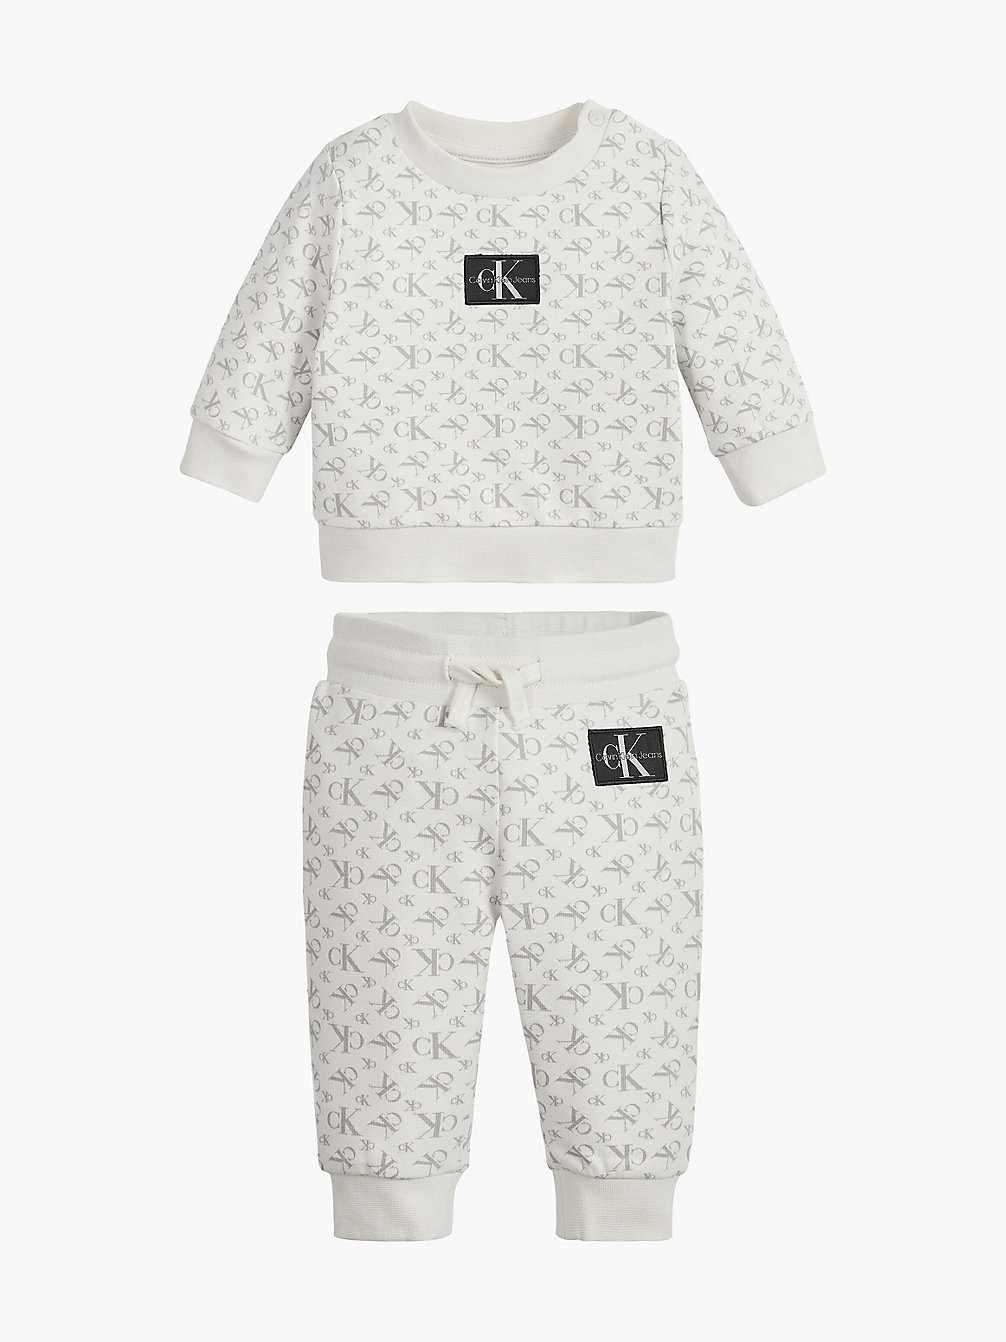 MONOGRAM AOP IVORY / GREY > Спортивный костюм с логотипом для новорожденных > undefined newborn - Calvin Klein